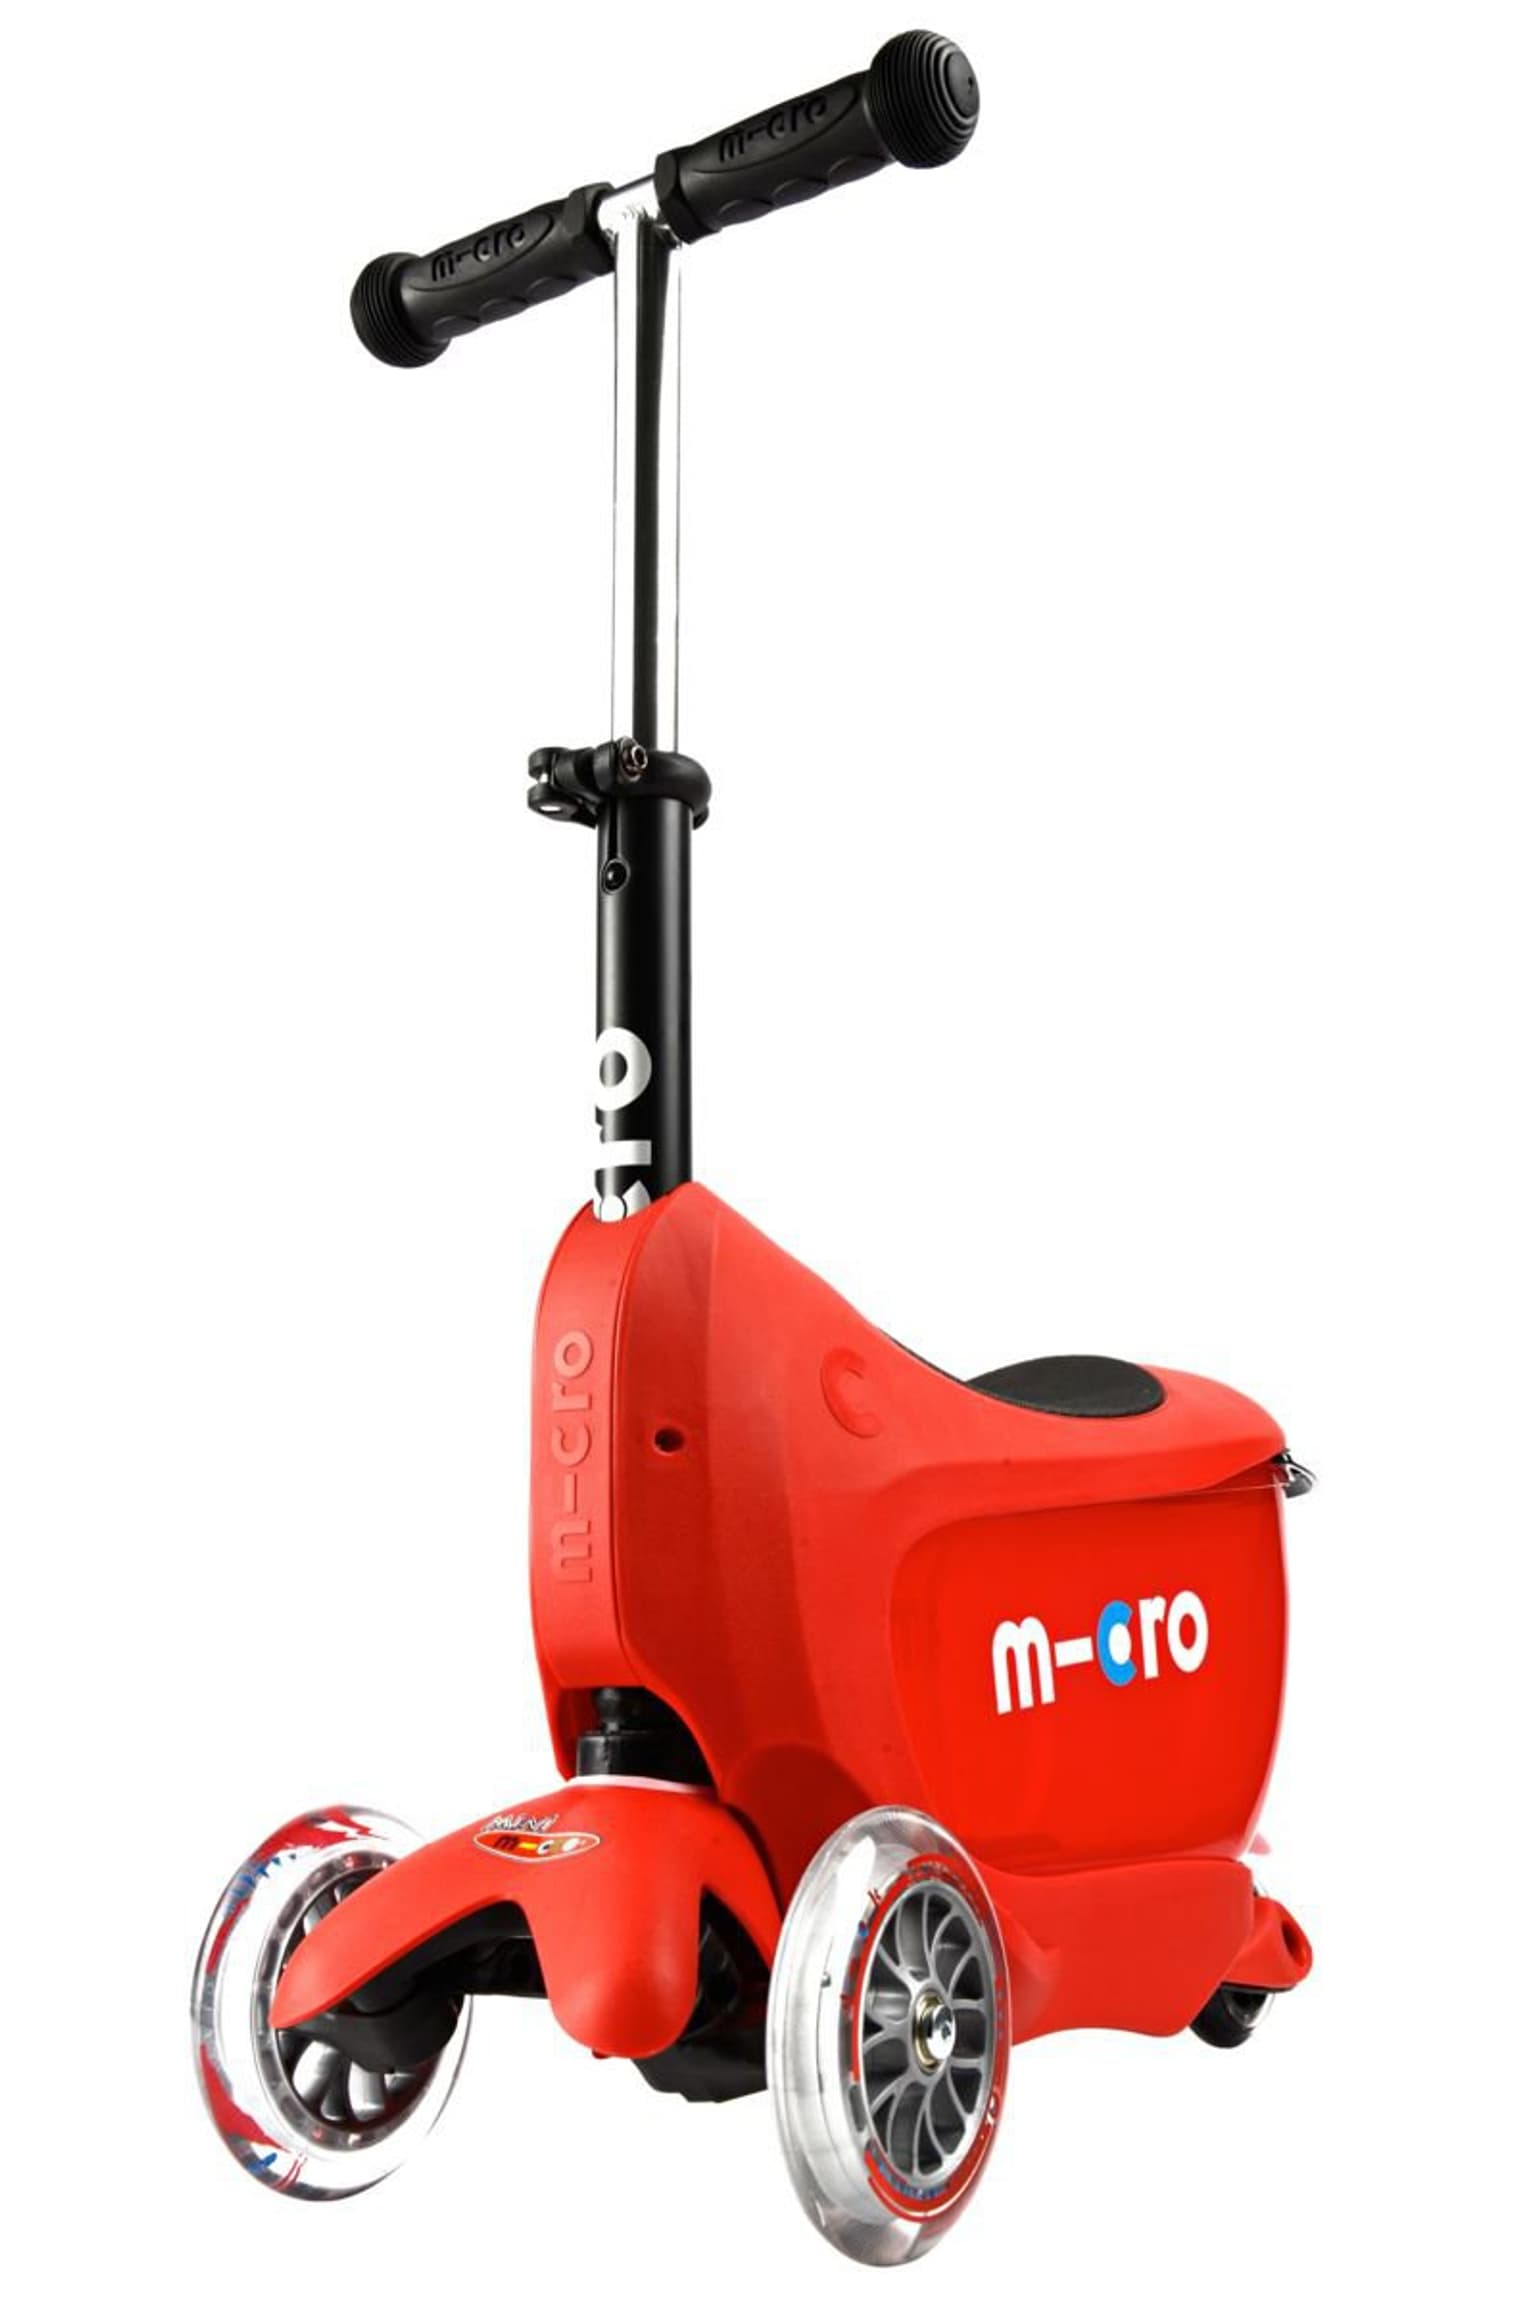 Micro Micro Mini2go Deluxe Plus Monopattini 1